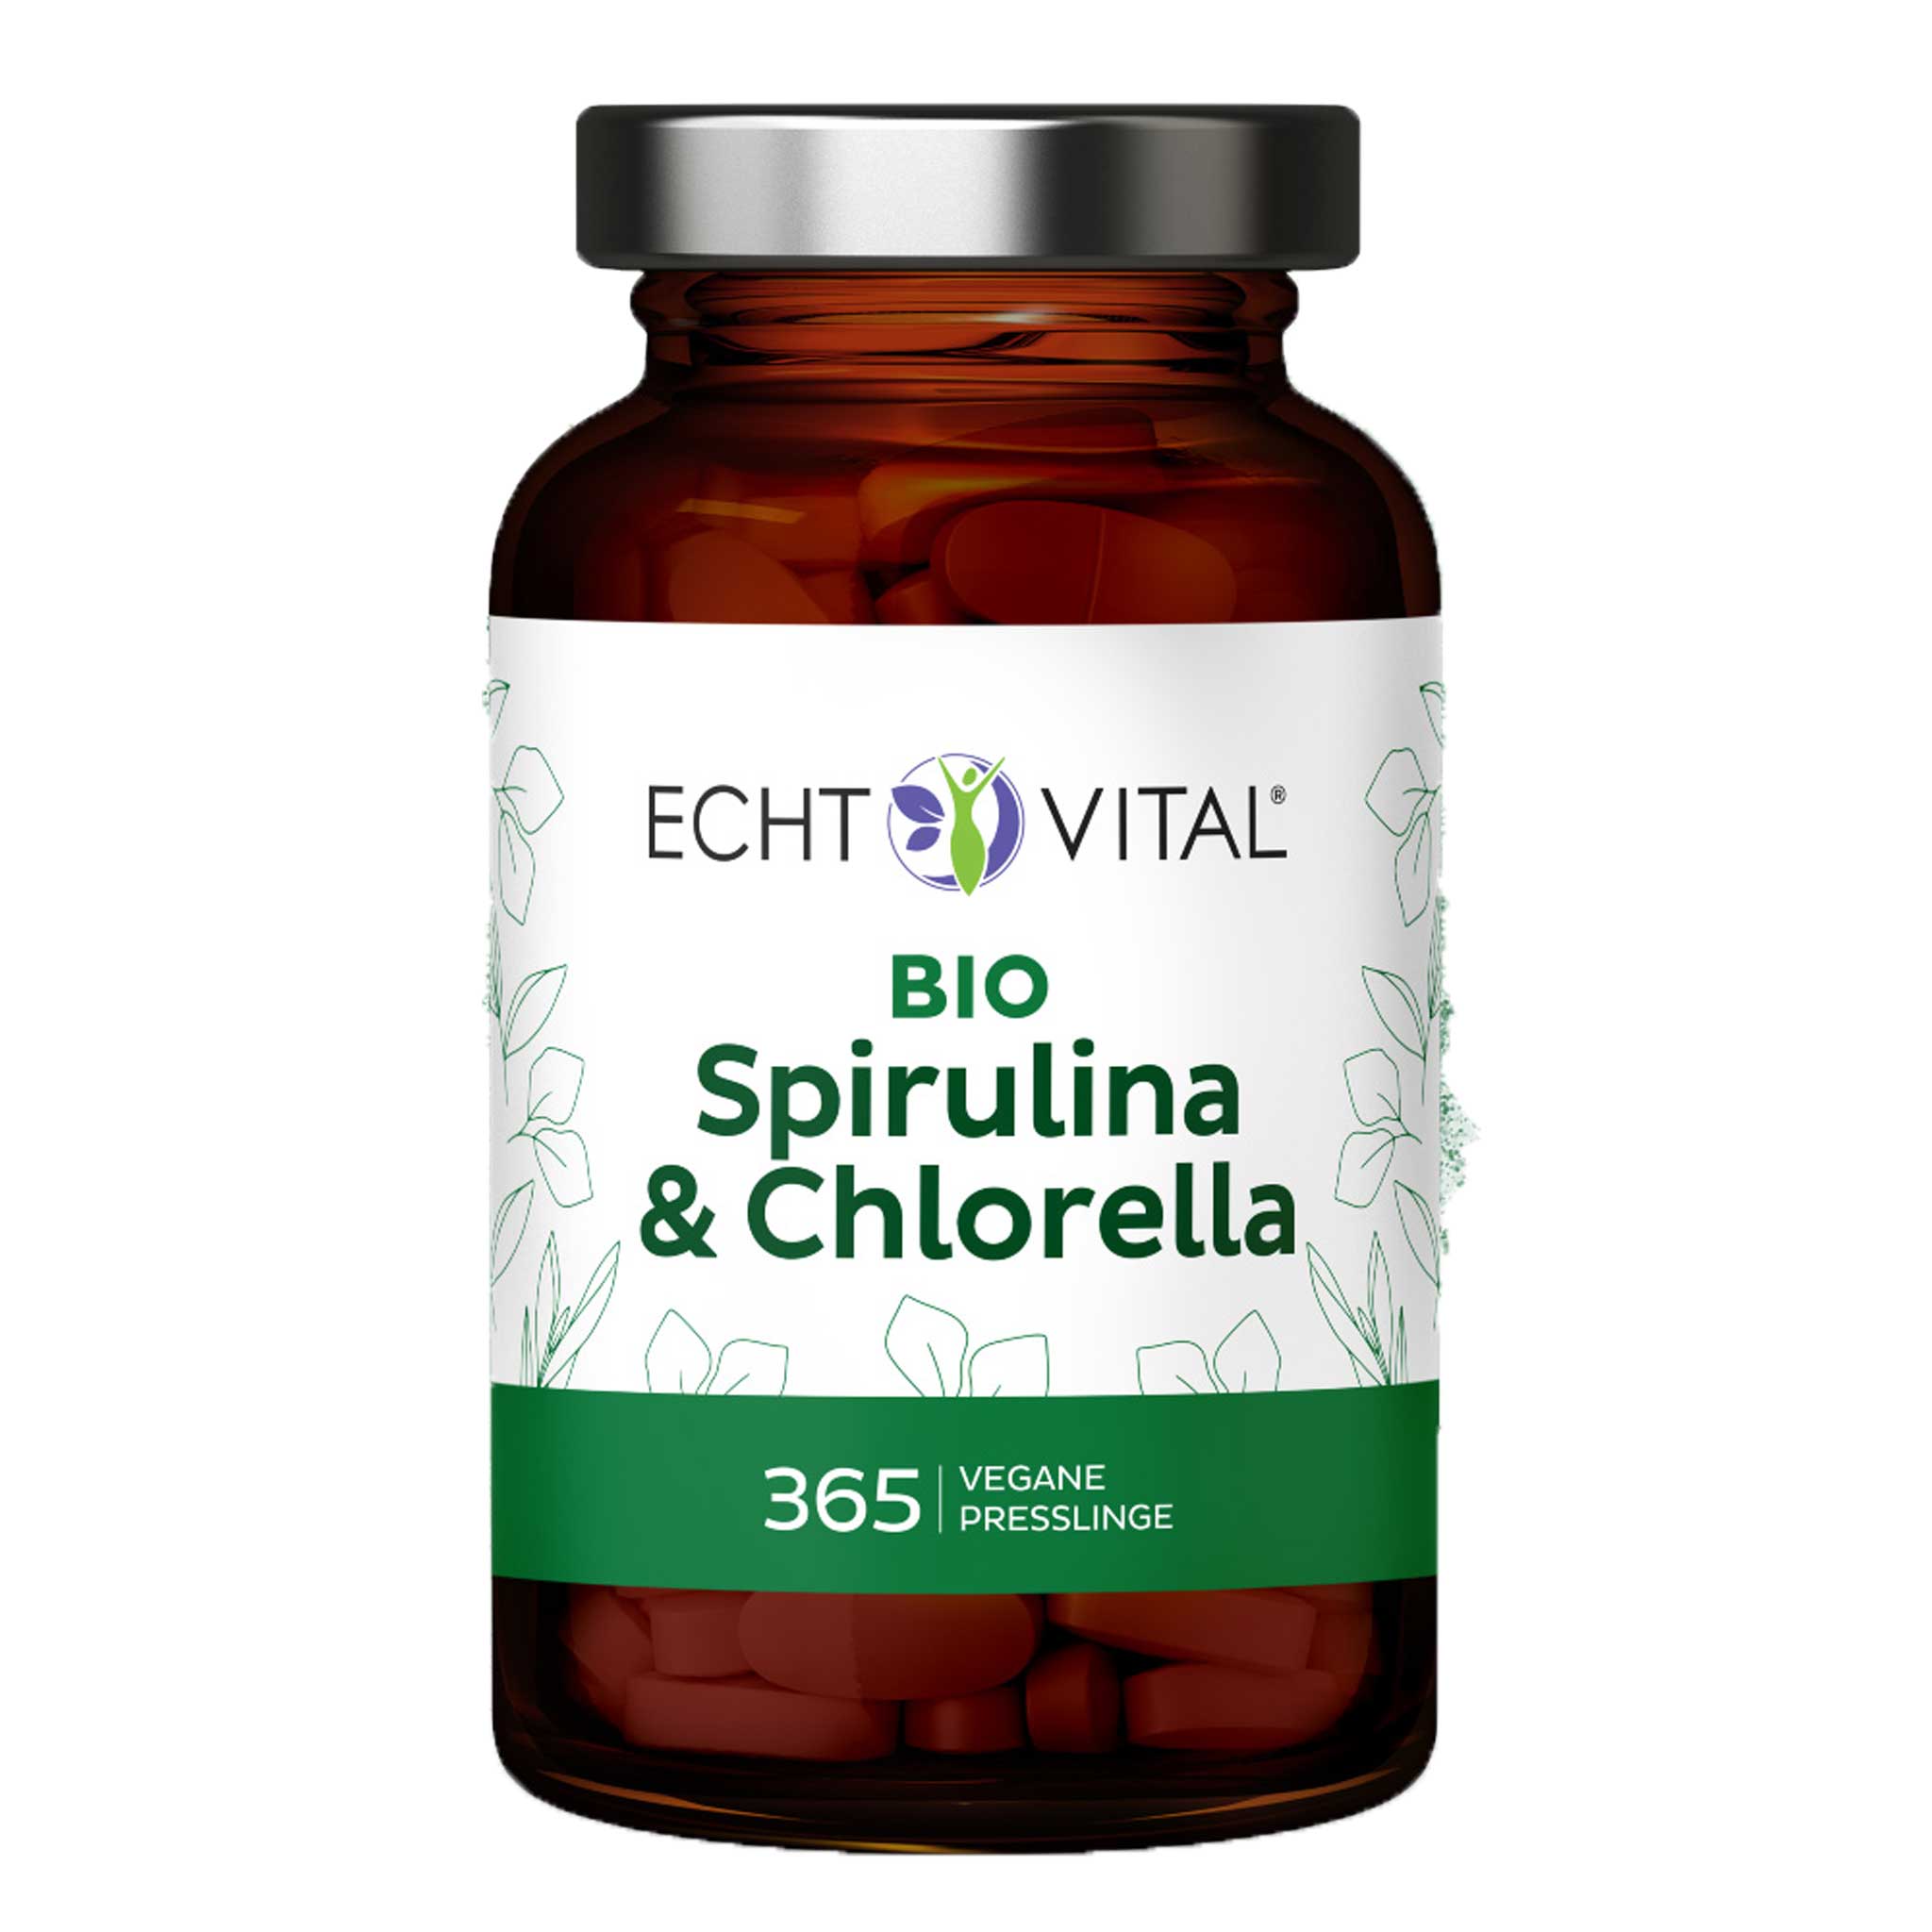 Bio Spirulina und Chlorella von Echt Vital beinhaltet 365 vegane Presslinge